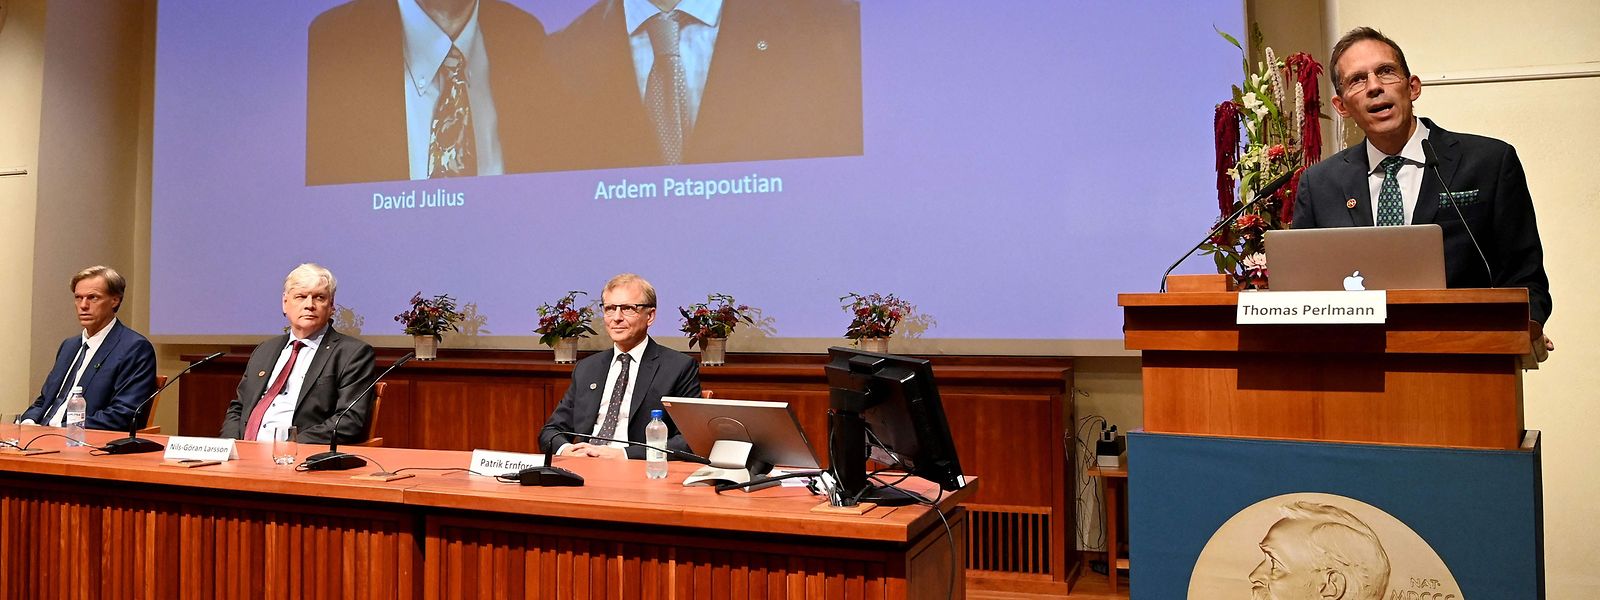 Thomas Perlmann(r.), der Selretär des Nobel-Komitees verkündete am Montag die diesjährigen Laureaten in der Sparte Medizin.